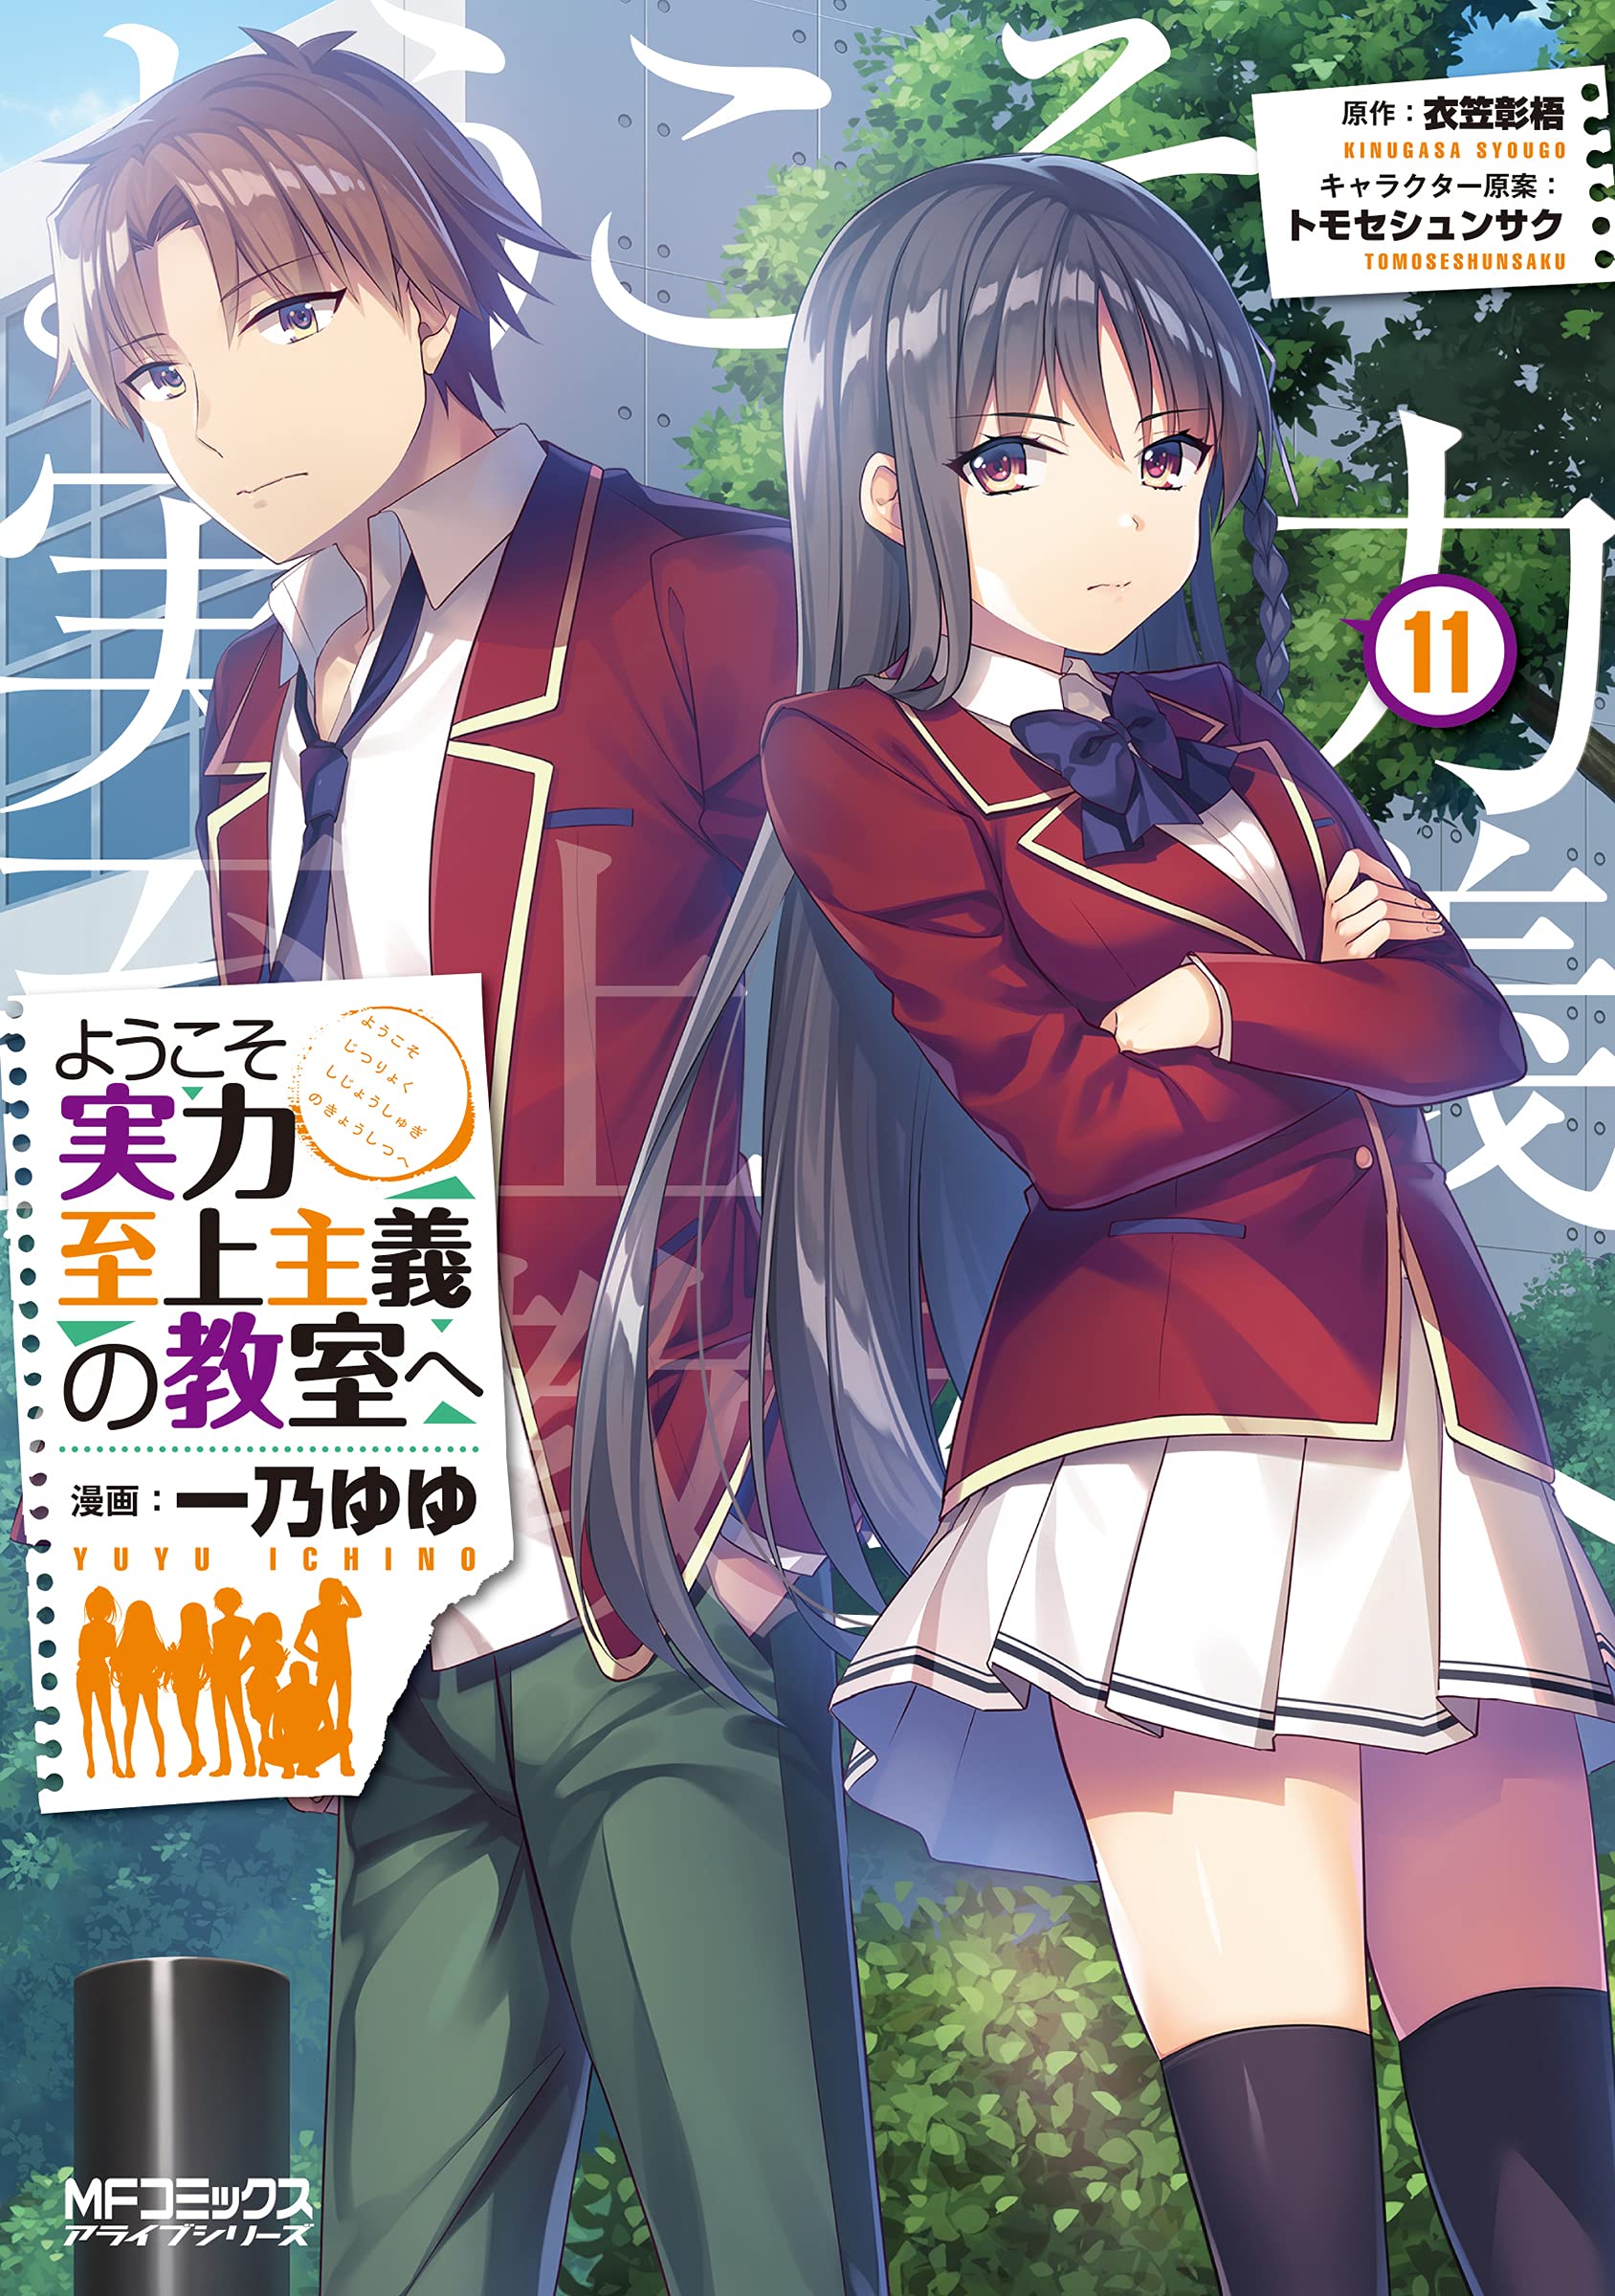 Classroom of The Elite Light Novel Volume 11.5  Personagens de anime,  Anime, Imagens aleatórias